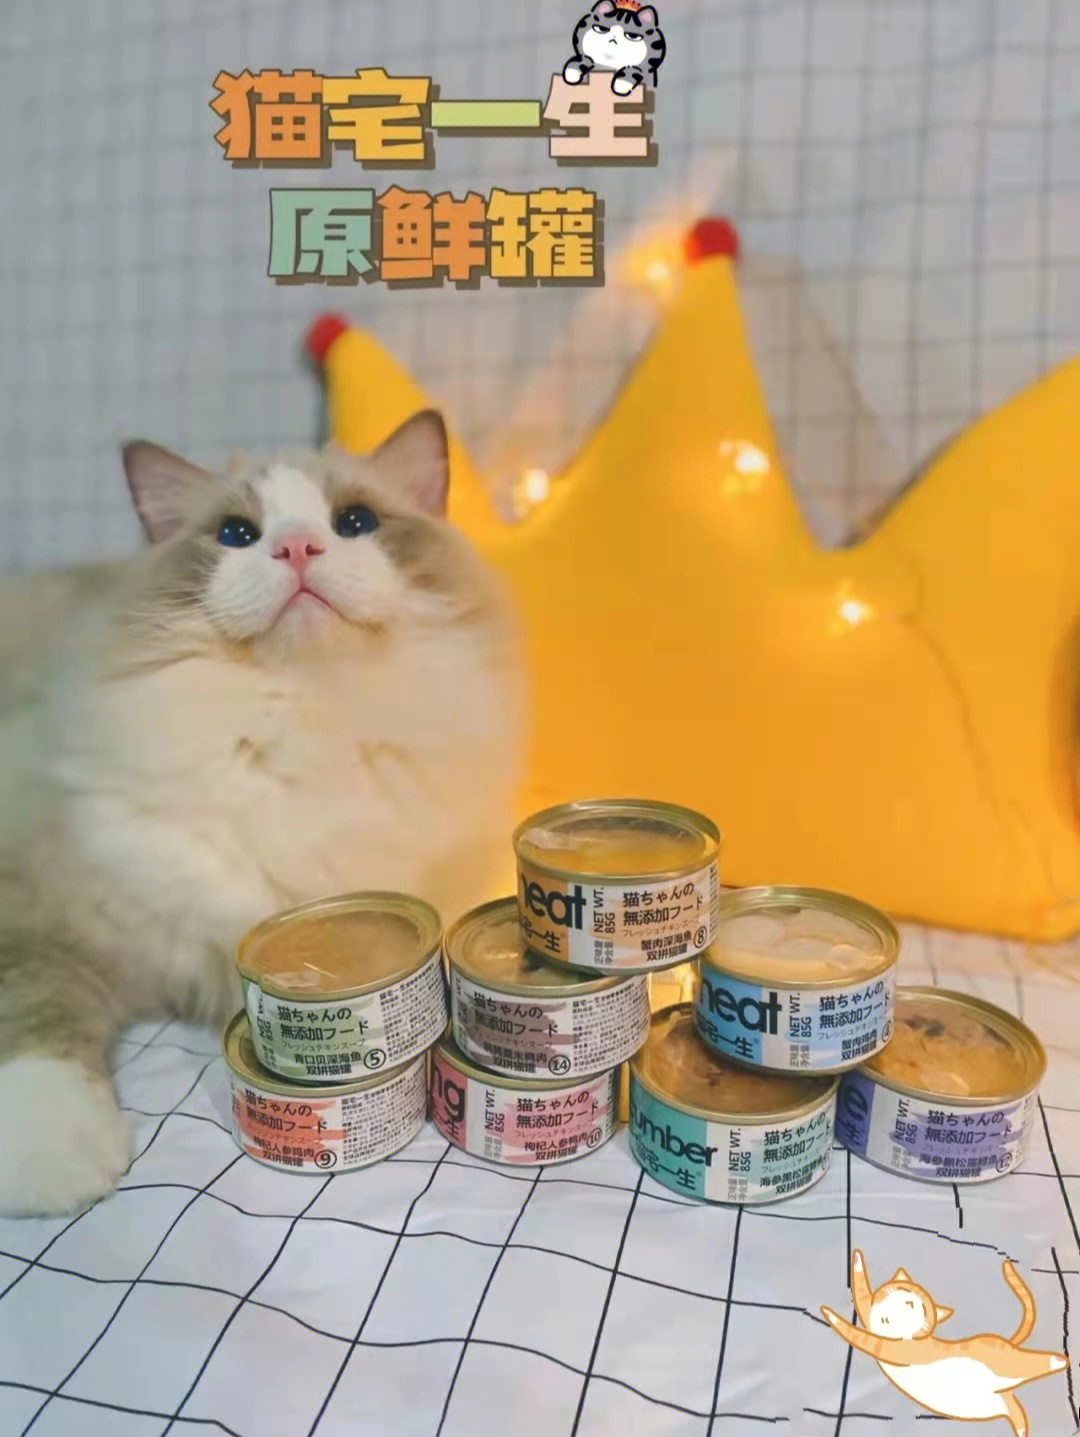 芙兰朵猫罐头图片